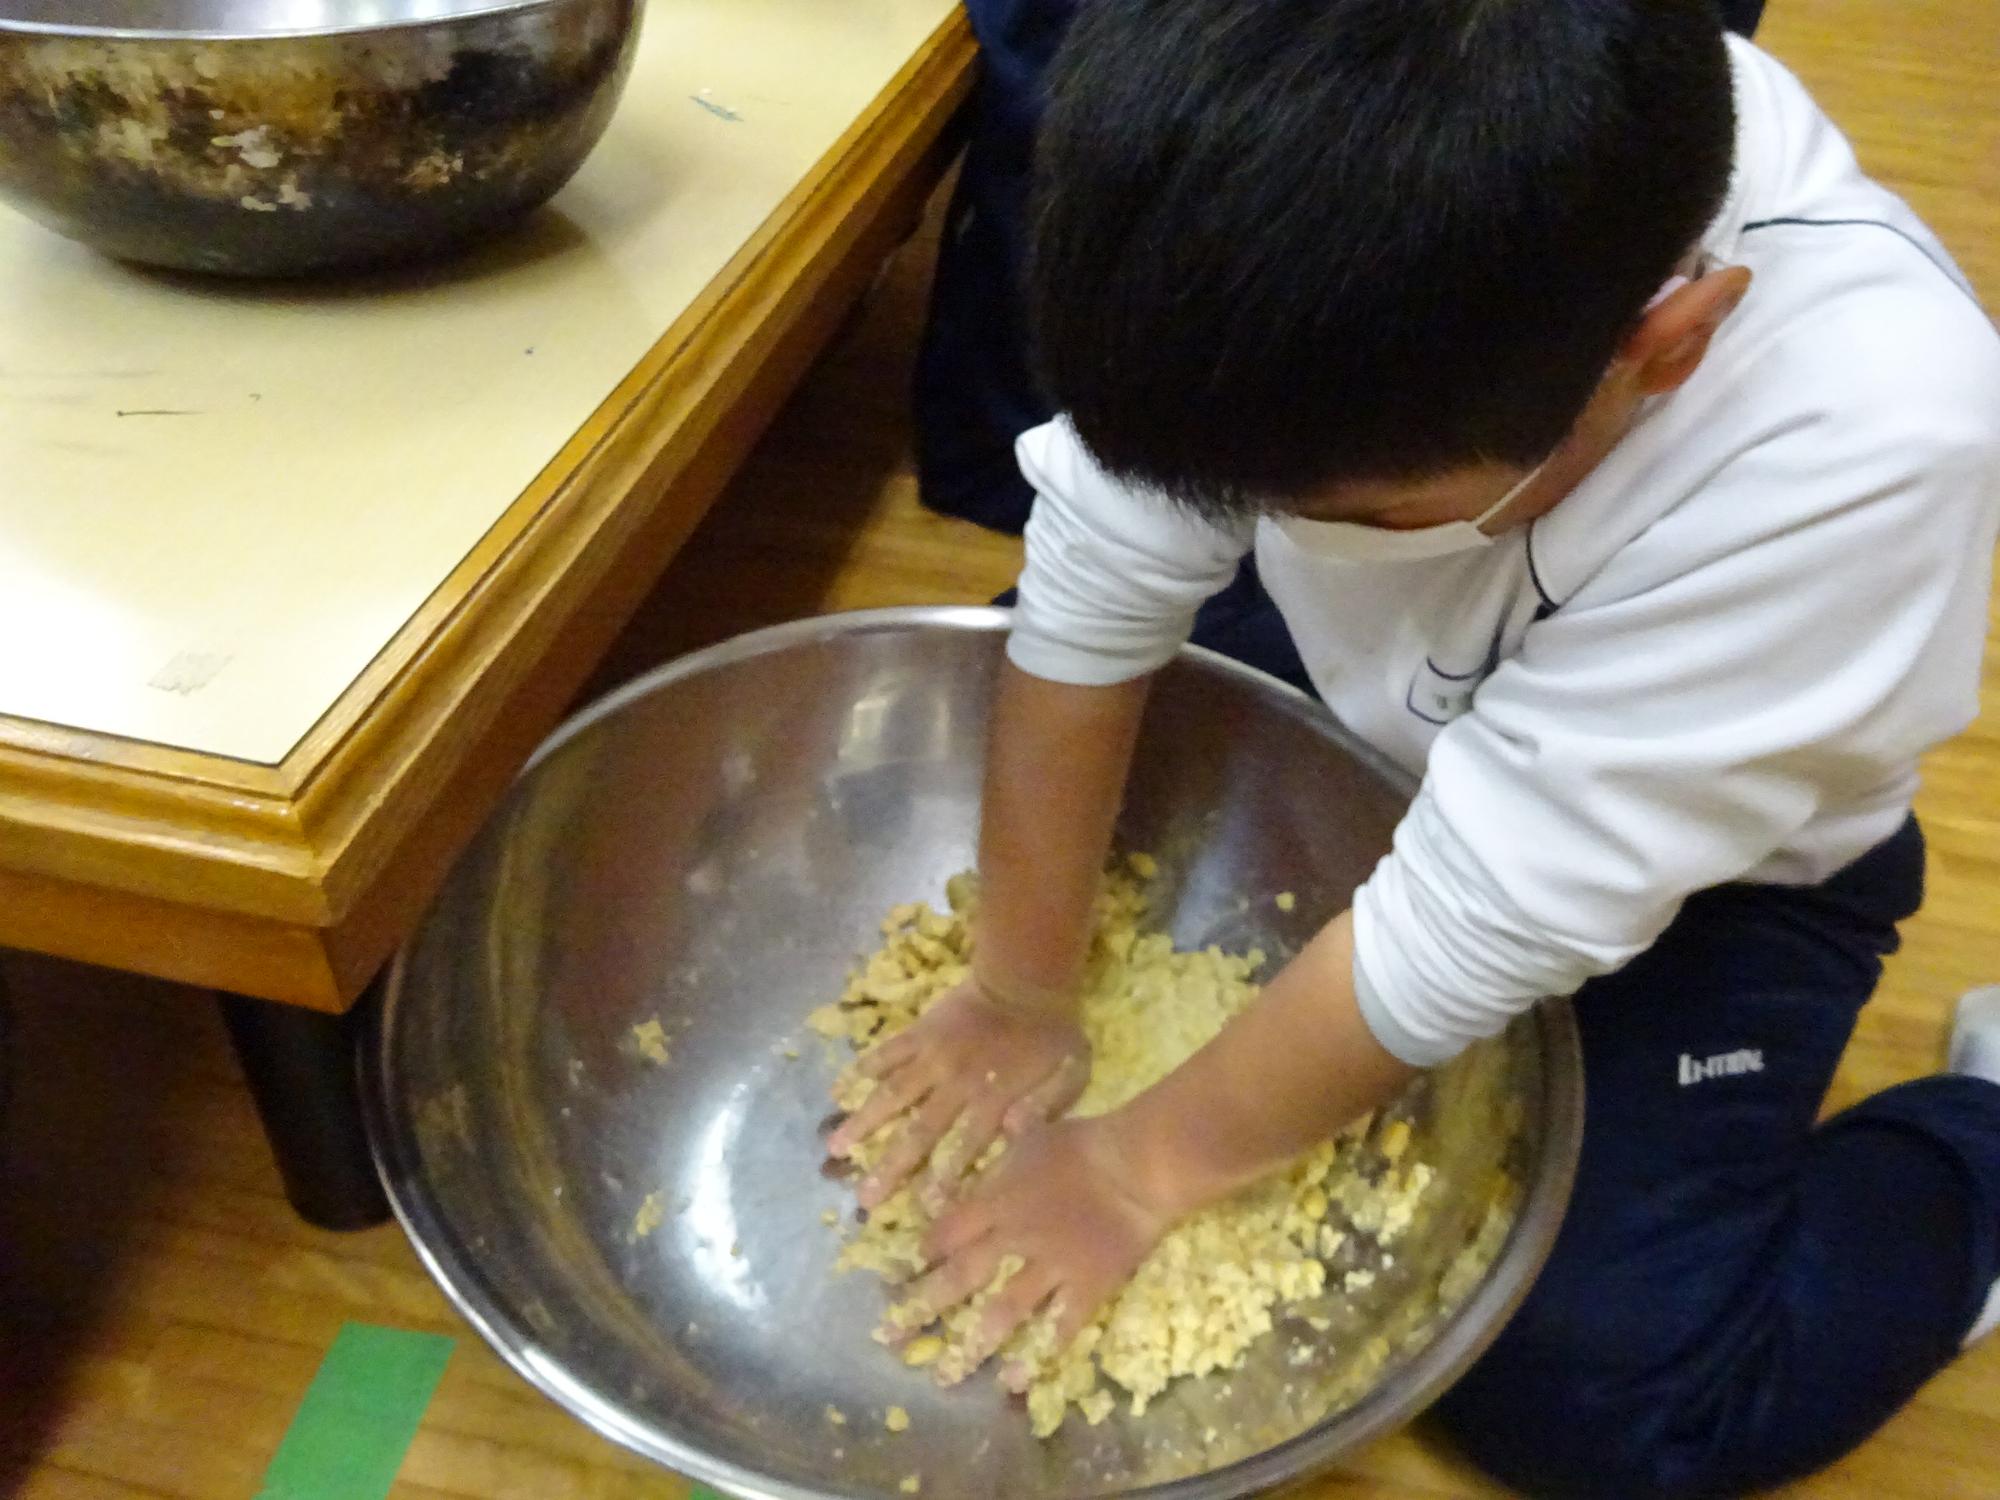 一つのボウルに入った大豆や麹などを児童が両手で混ぜ合わせている写真